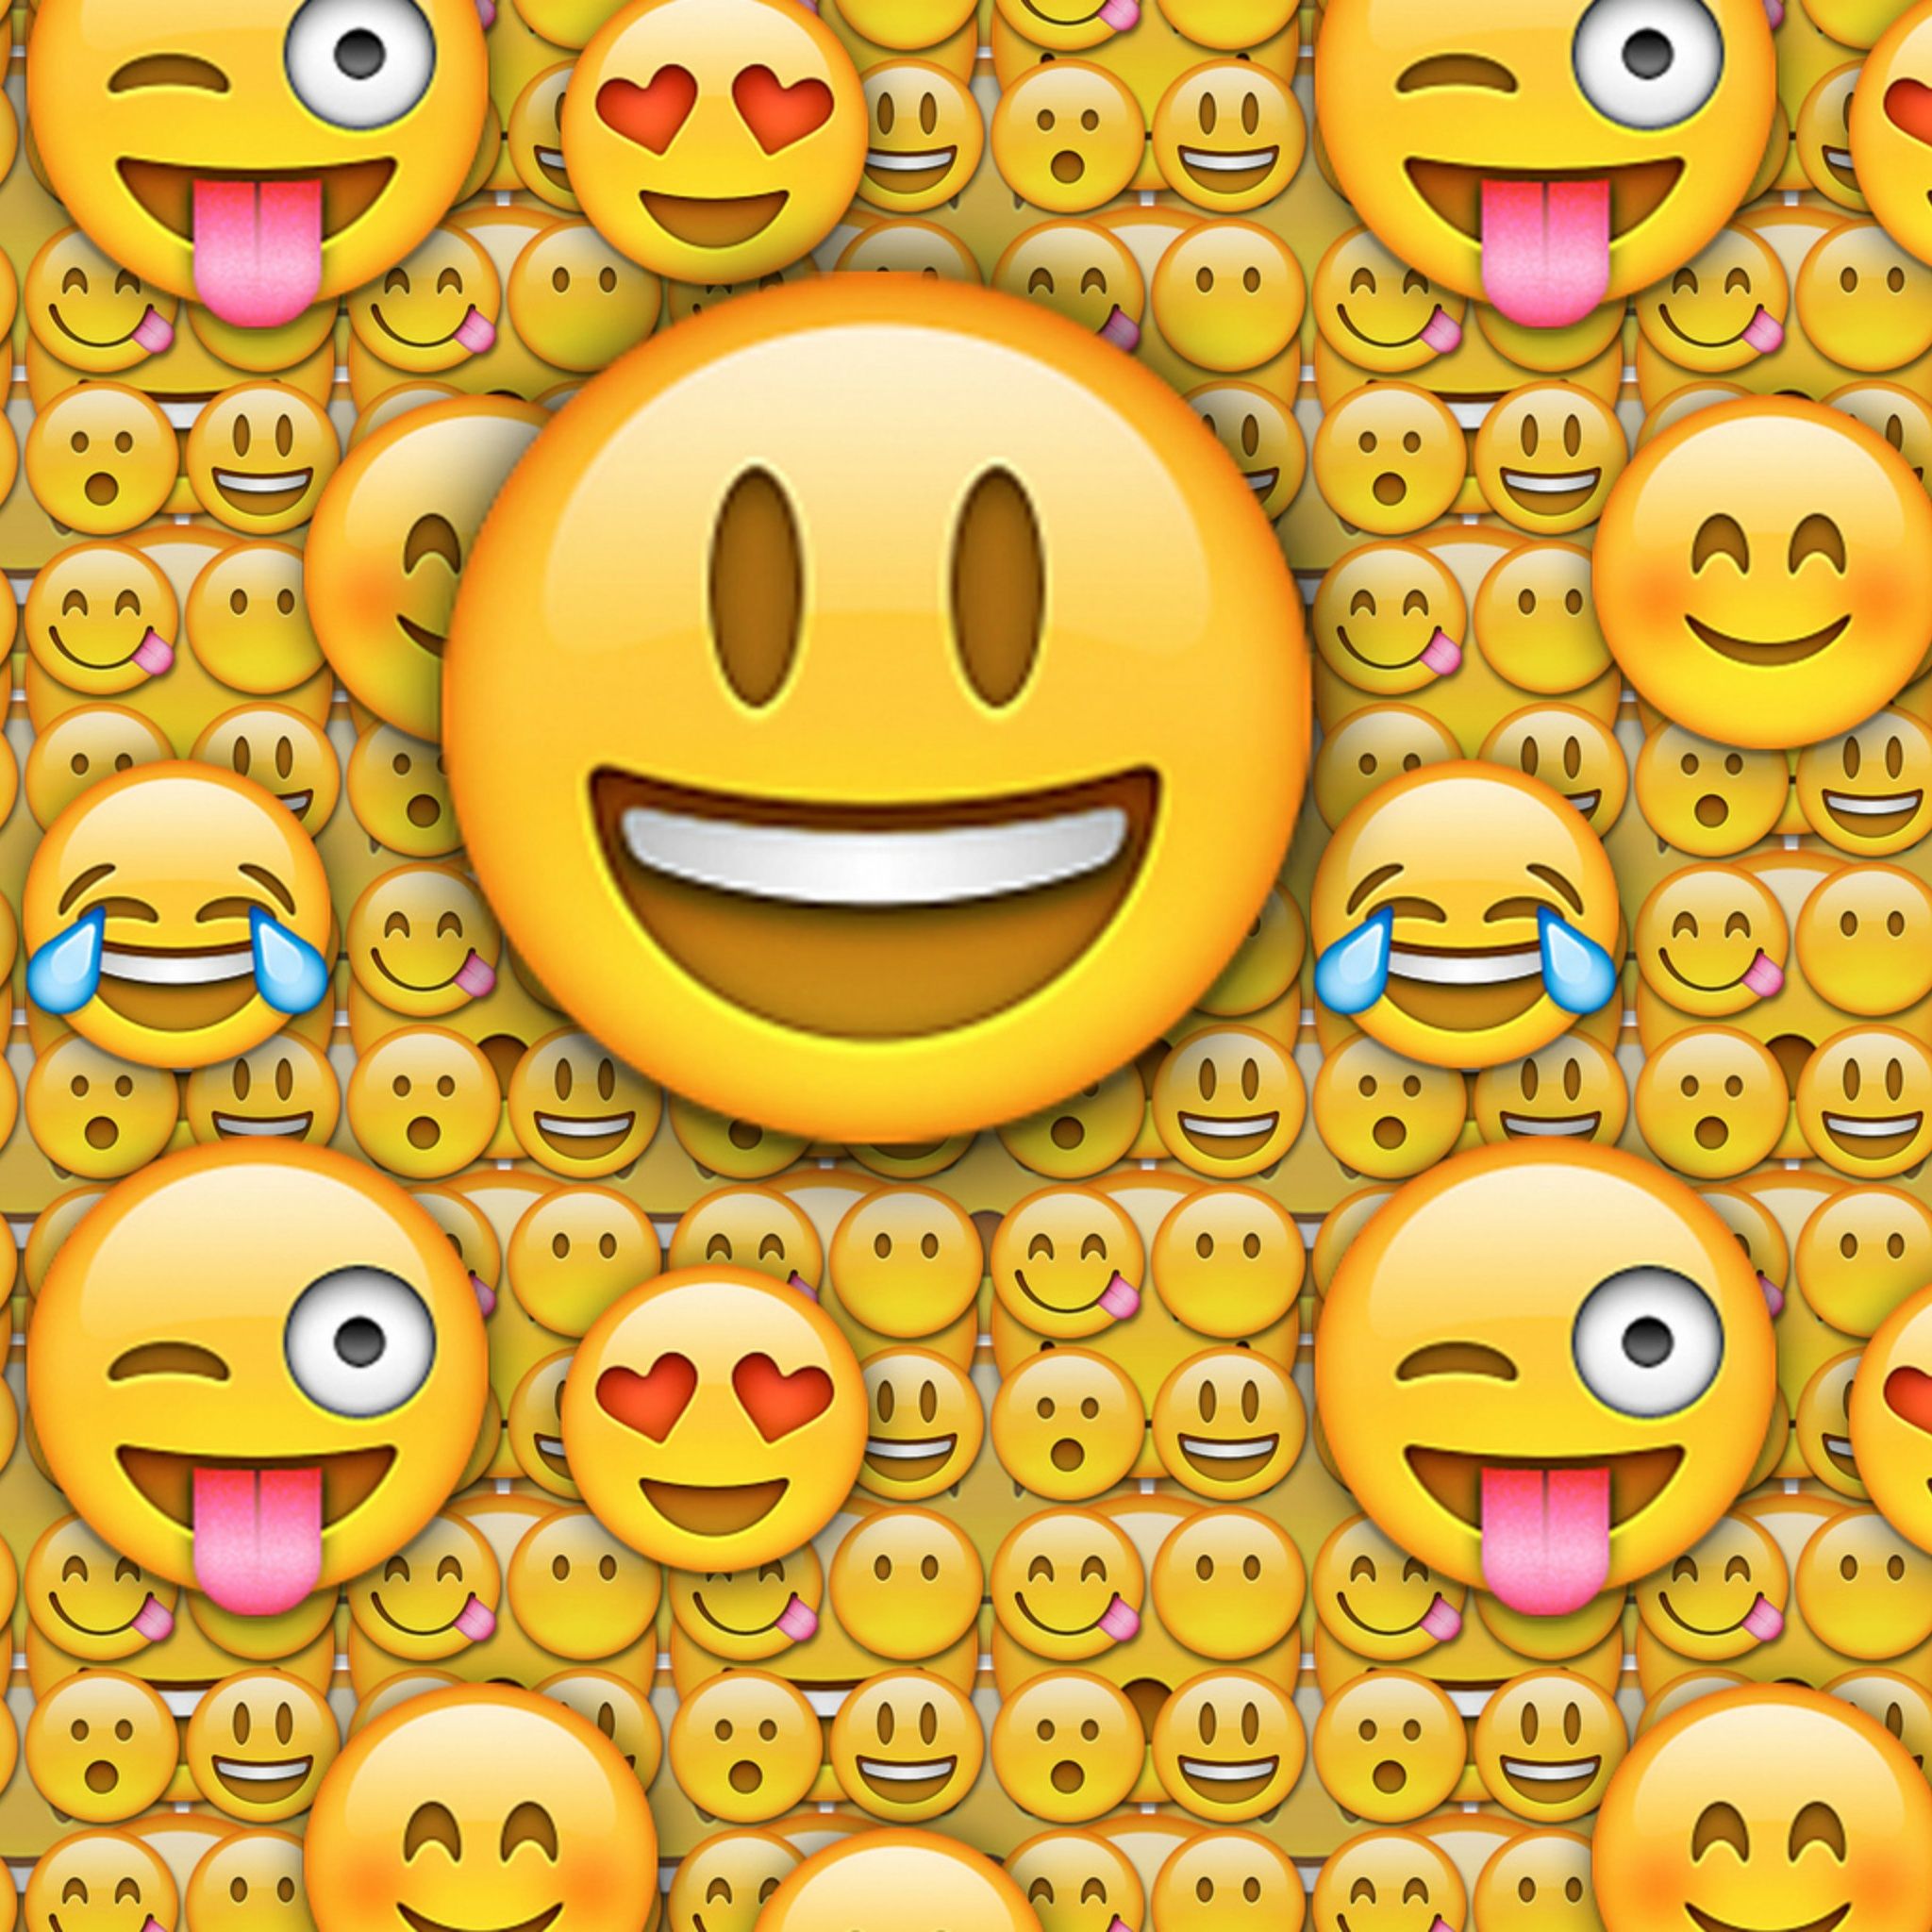 Smiling Emoji Wallpaper Free Smiling Emoji Background